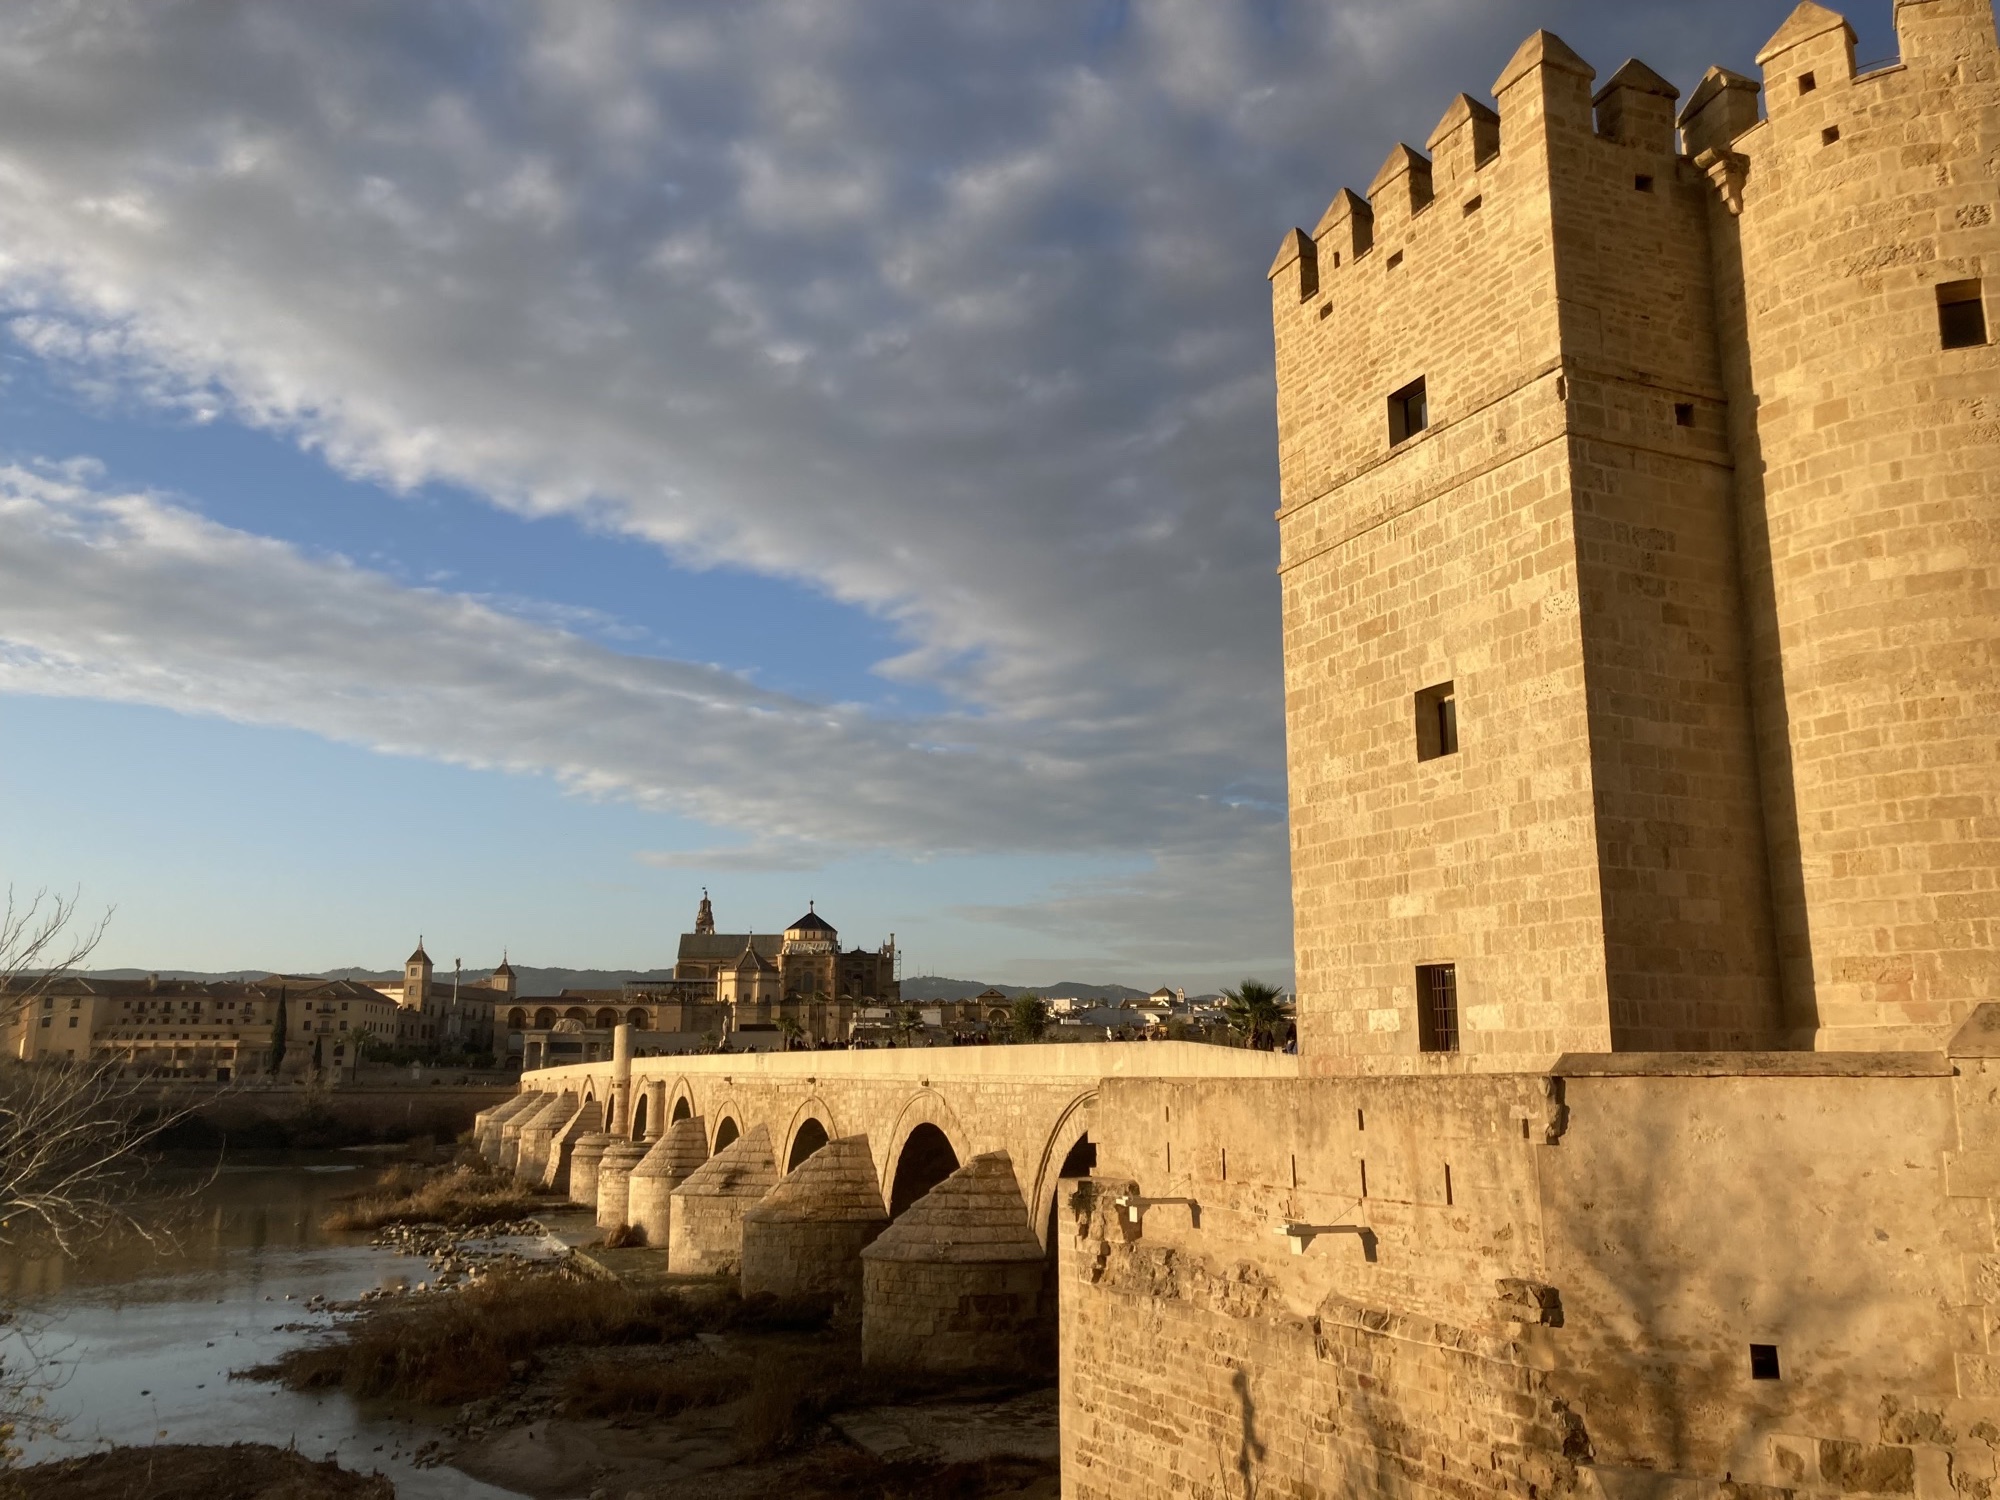 Torre de Calahorra, ein quadratischer wehrhafter Turm gekrönt mit Spitzen neben der Brücke Puente Romano